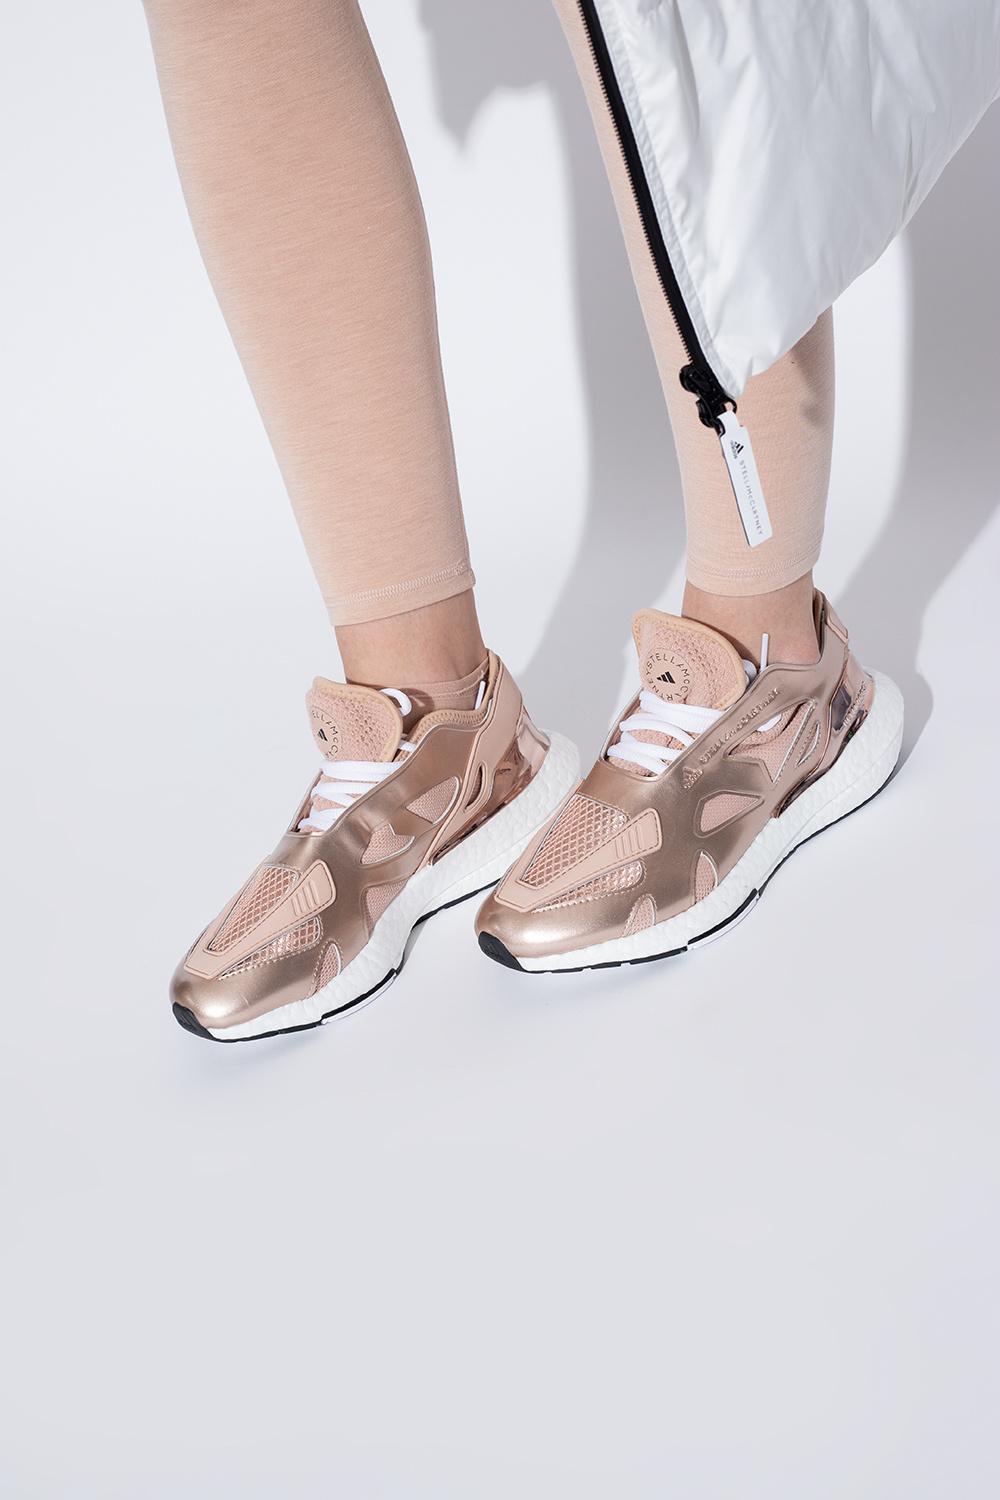 adidas Stella McCartney Adidas Stella Mccartney 'ultraboost Sneakers in Pink | Lyst